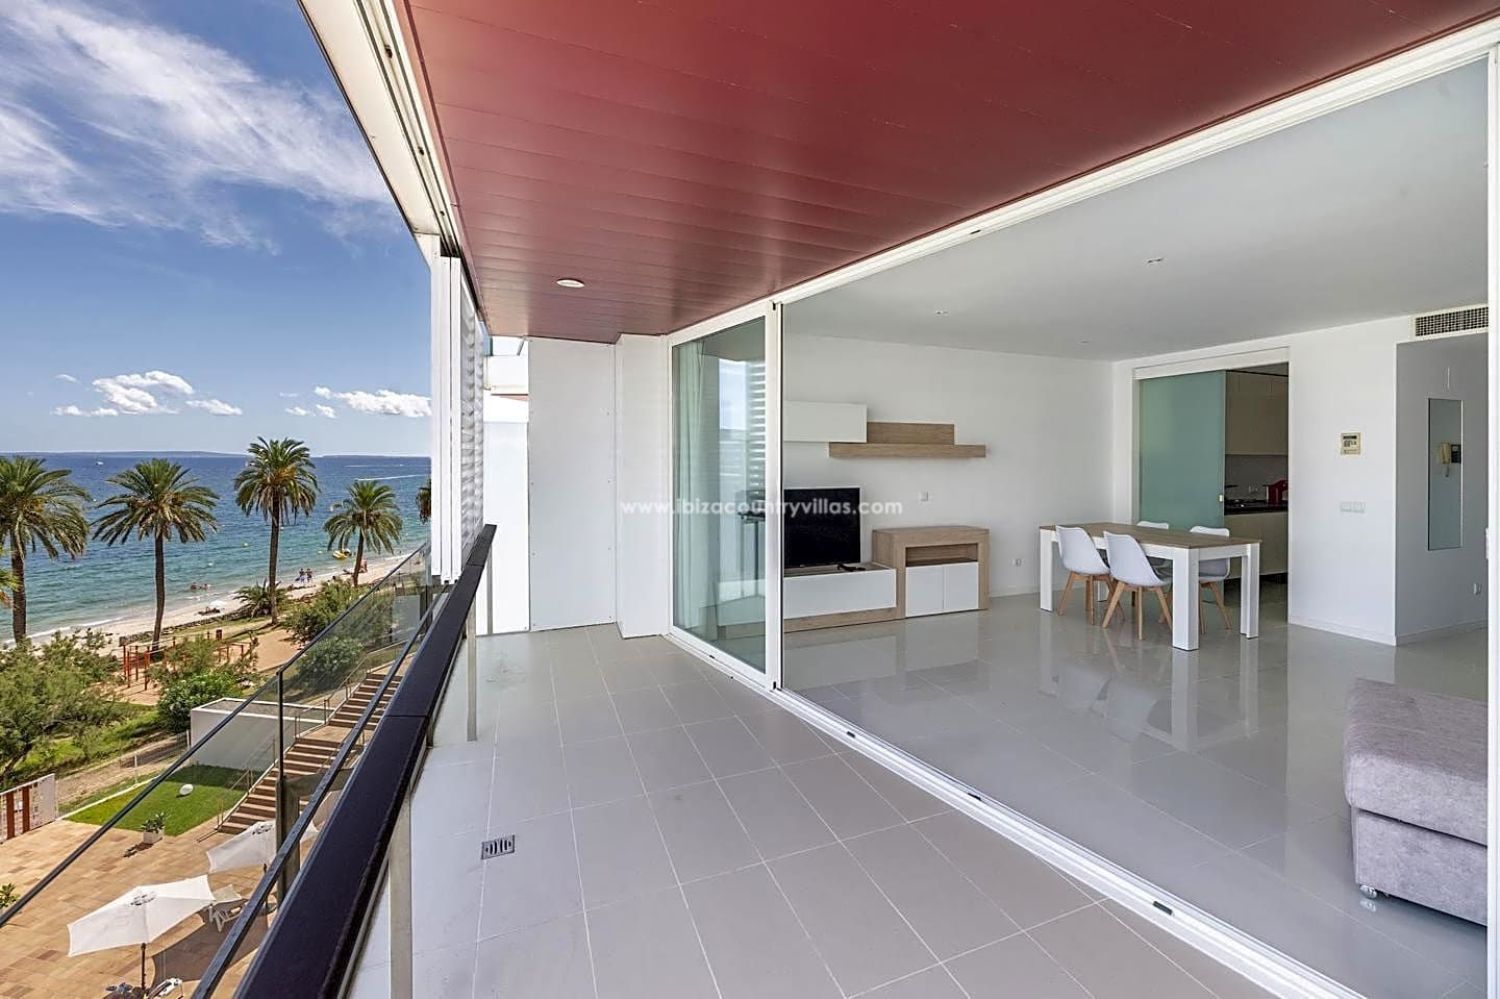 Frontline beach flat for sale in Avenida Pere Matutes Noguera in Ibiza